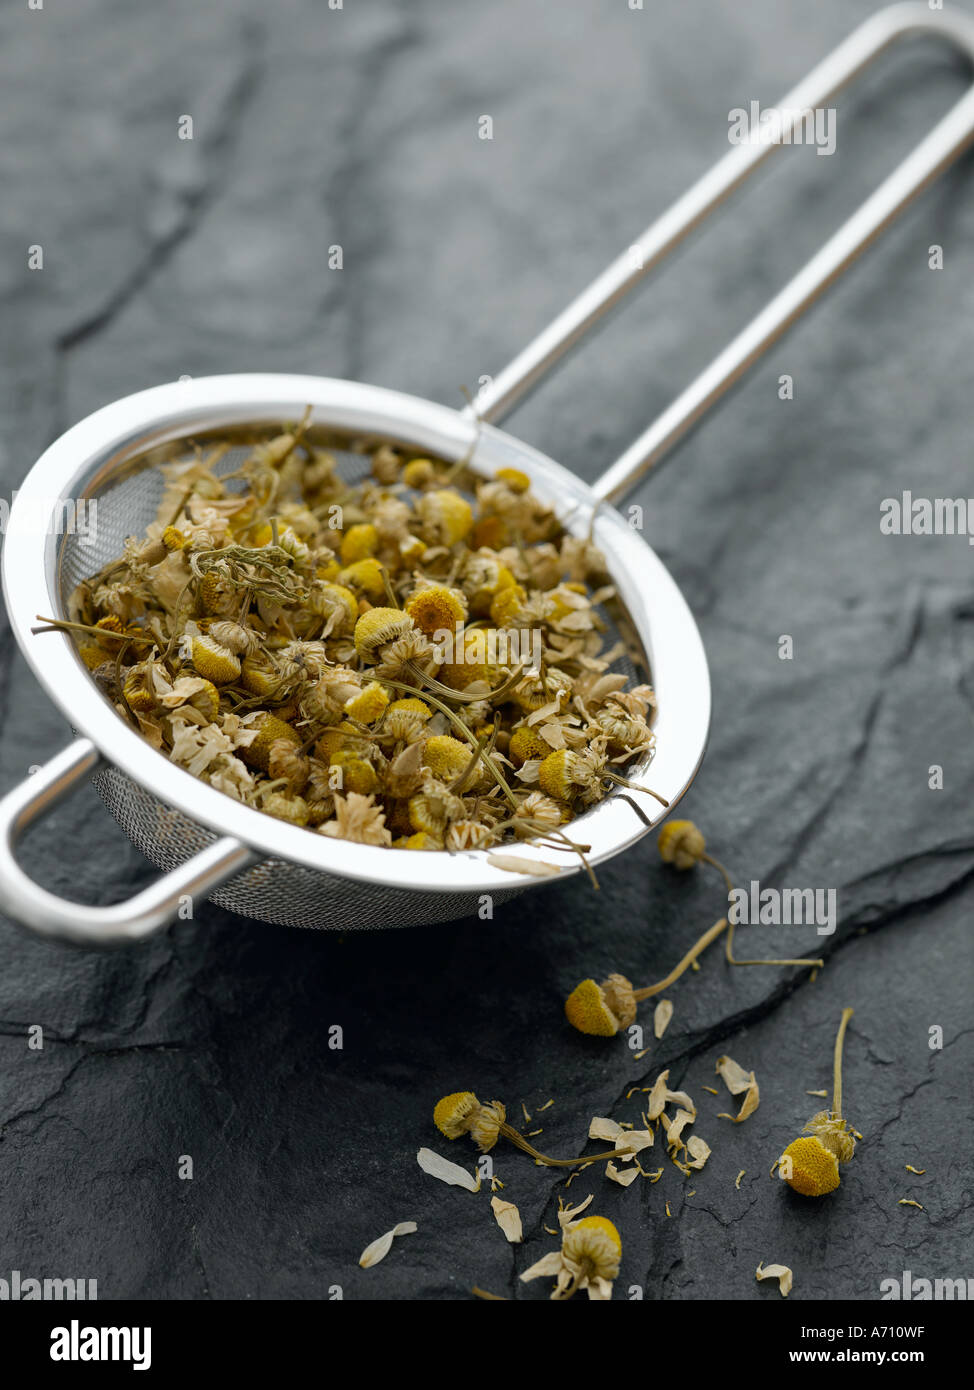 Fiori di camomilla essiccata nel filtro di tè - fascia alta Hasselblad 61mb di immagine digitale Foto Stock